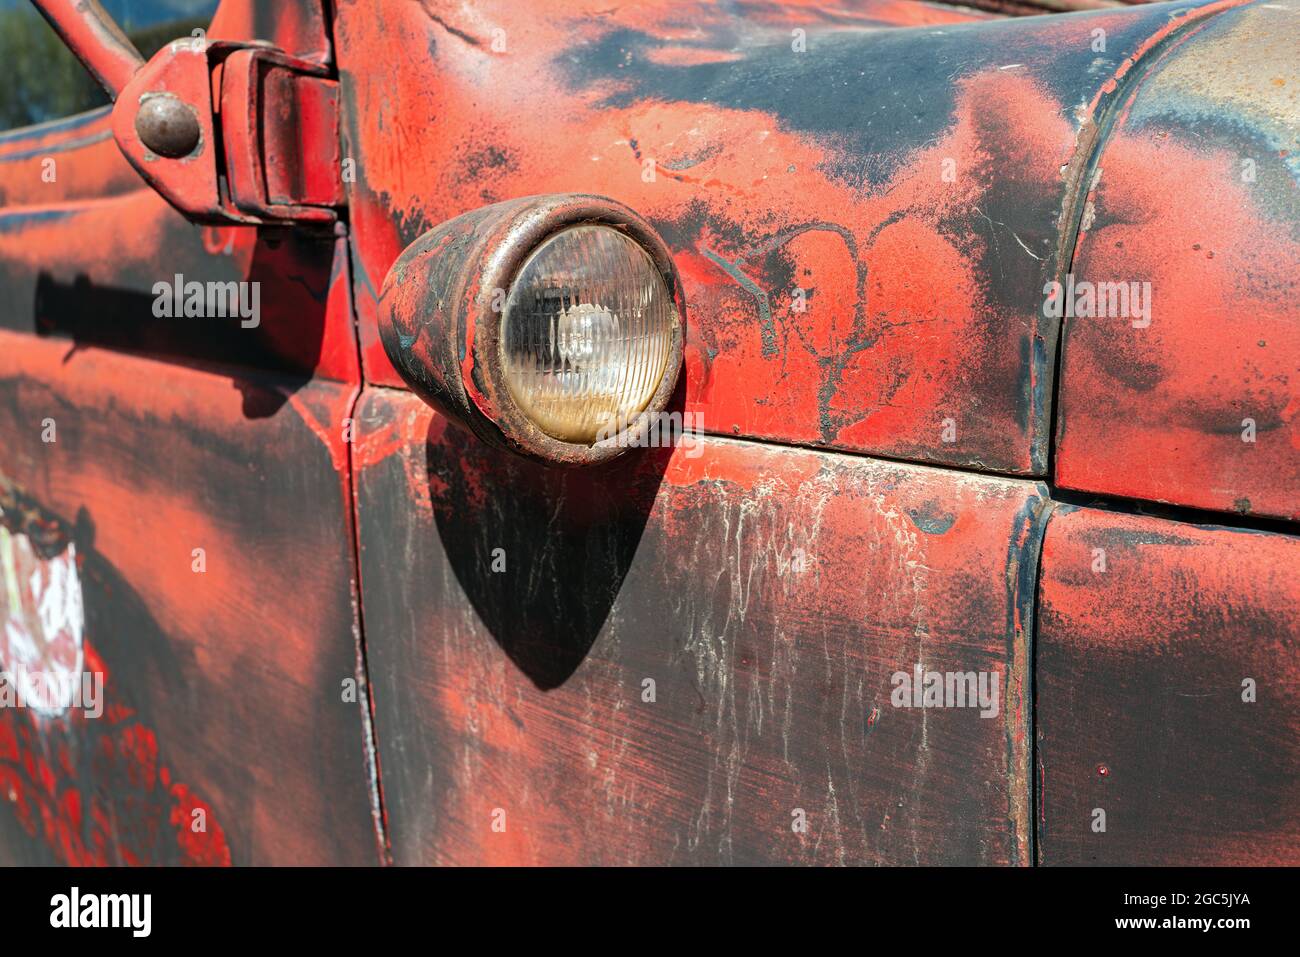 Un projecteur sur le côté passager d'un camion antique Photo Stock - Alamy